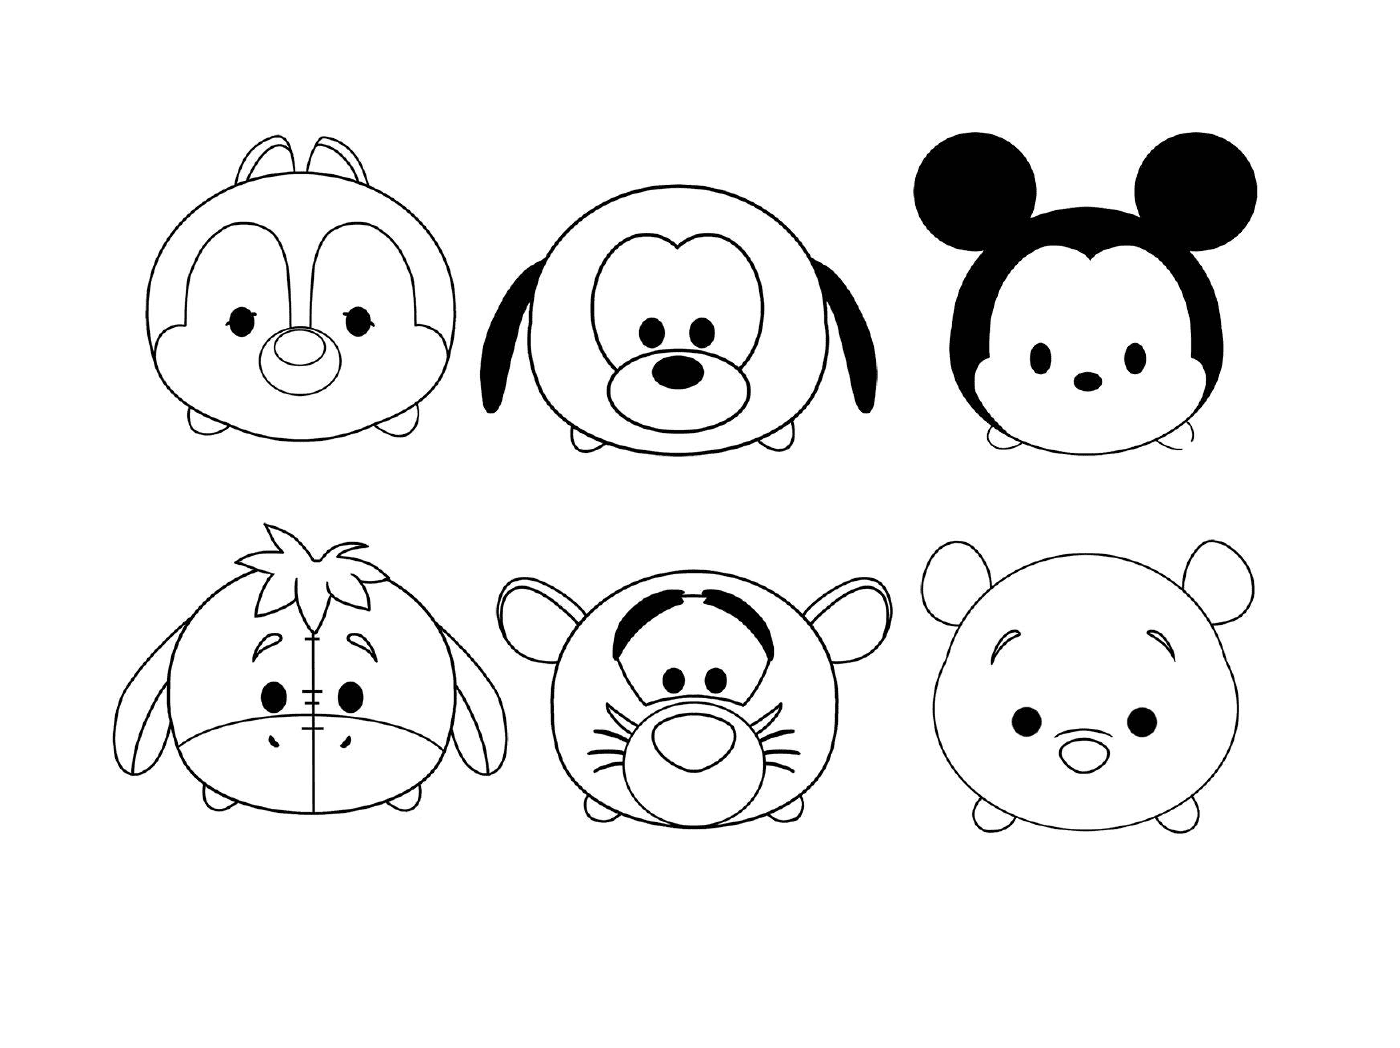  Sechs Charaktere aus verschiedenen Cartoons 